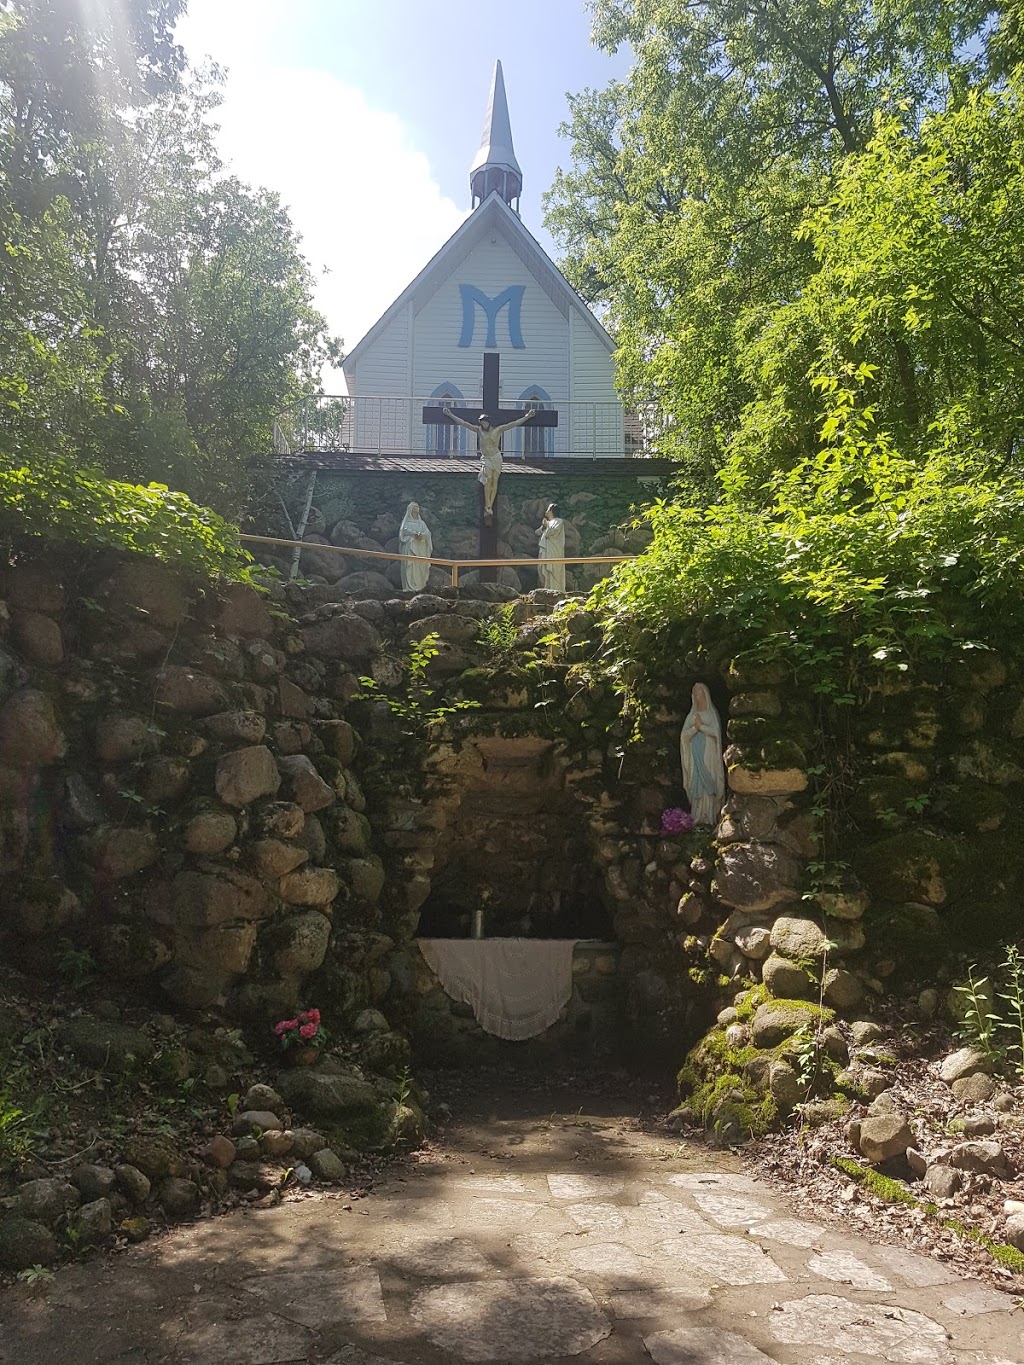 St. Malo Shrine and Grotto | De La Grotte Ave, Saint Malo, MB R0A 1T0, Canada